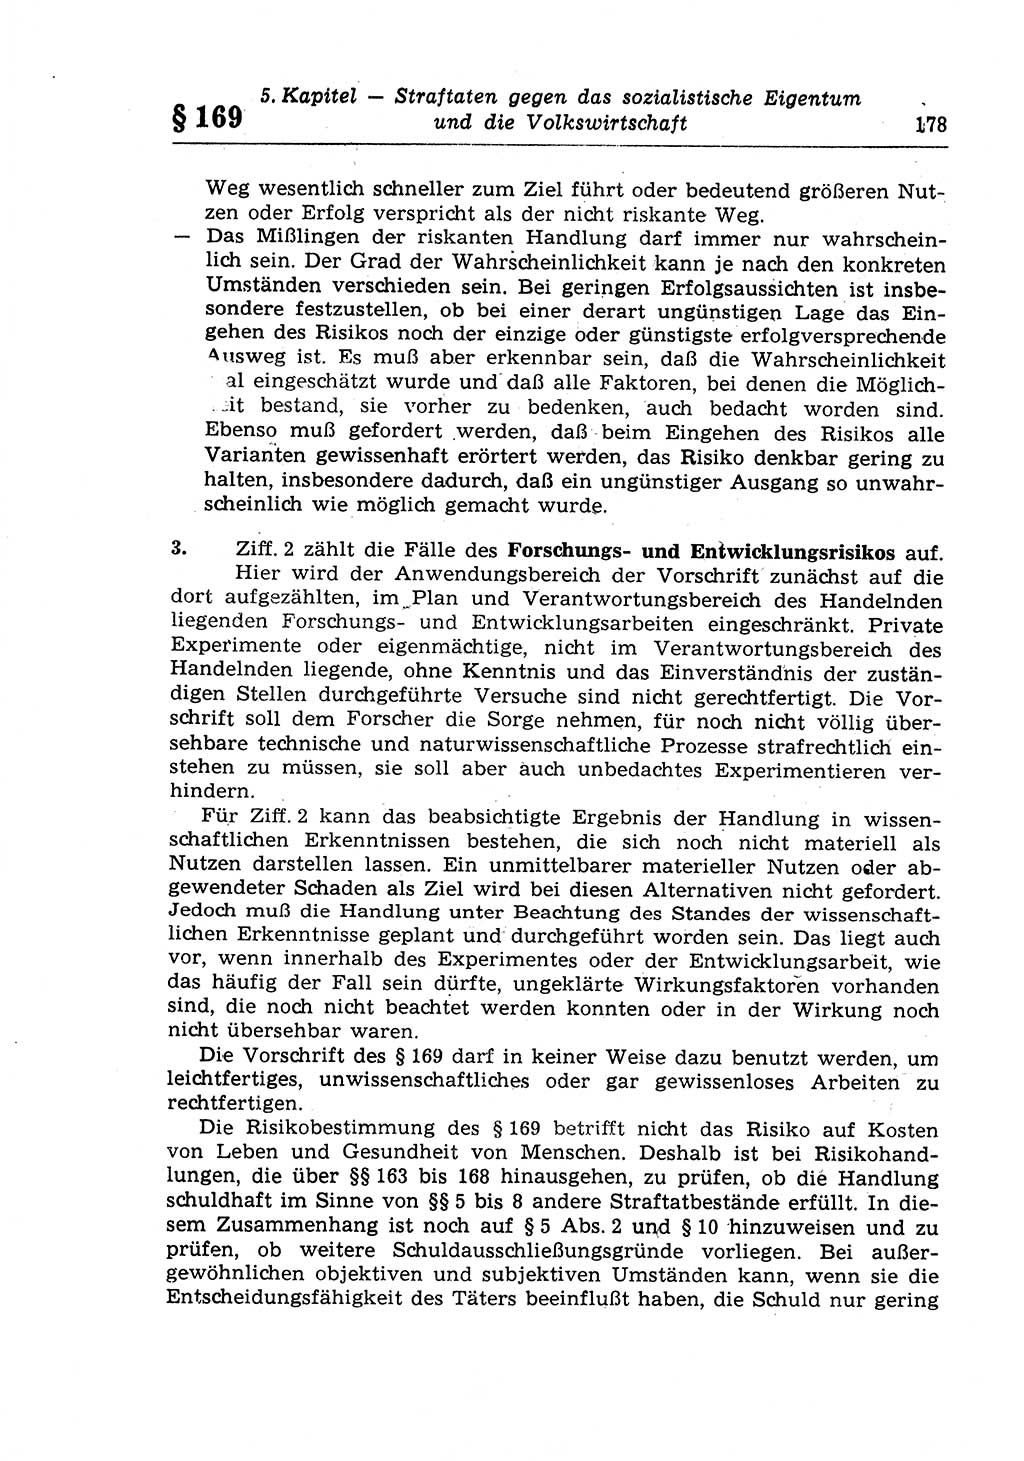 Strafrecht der Deutschen Demokratischen Republik (DDR), Lehrkommentar zum Strafgesetzbuch (StGB), Besonderer Teil 1970, Seite 178 (Strafr. DDR Lehrkomm. StGB BT 1970, S. 178)